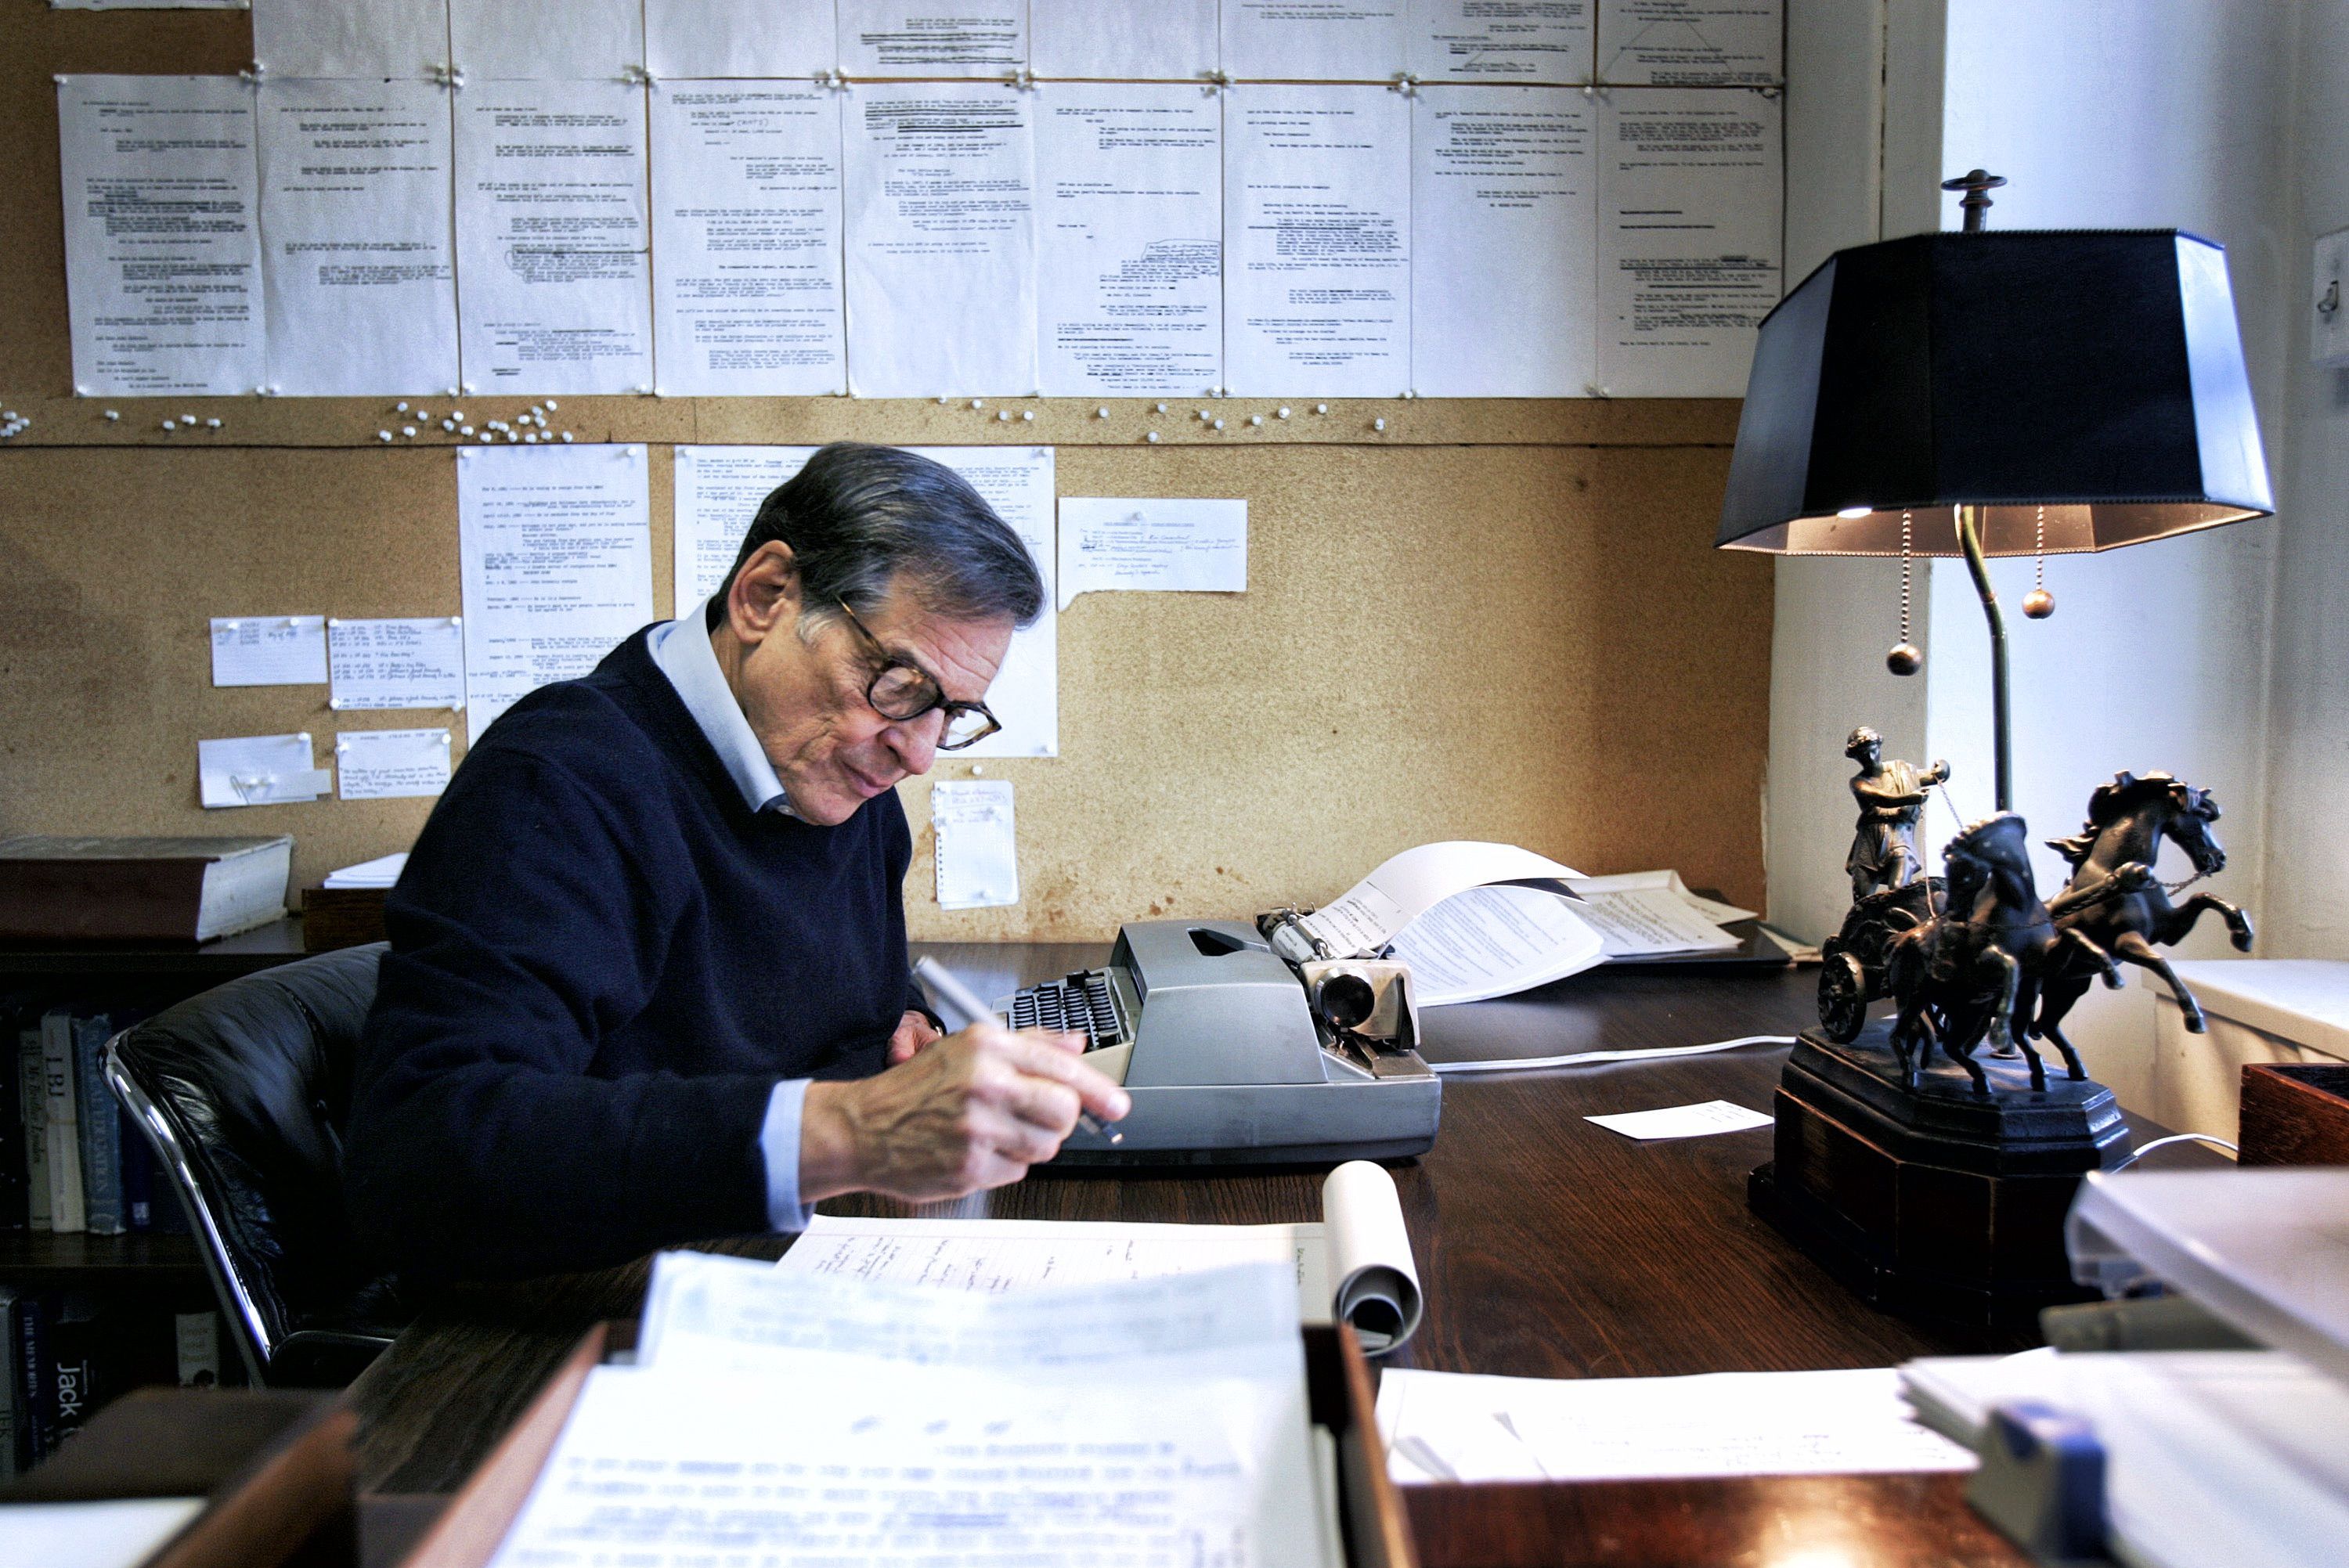 Robert Caro working at his desk